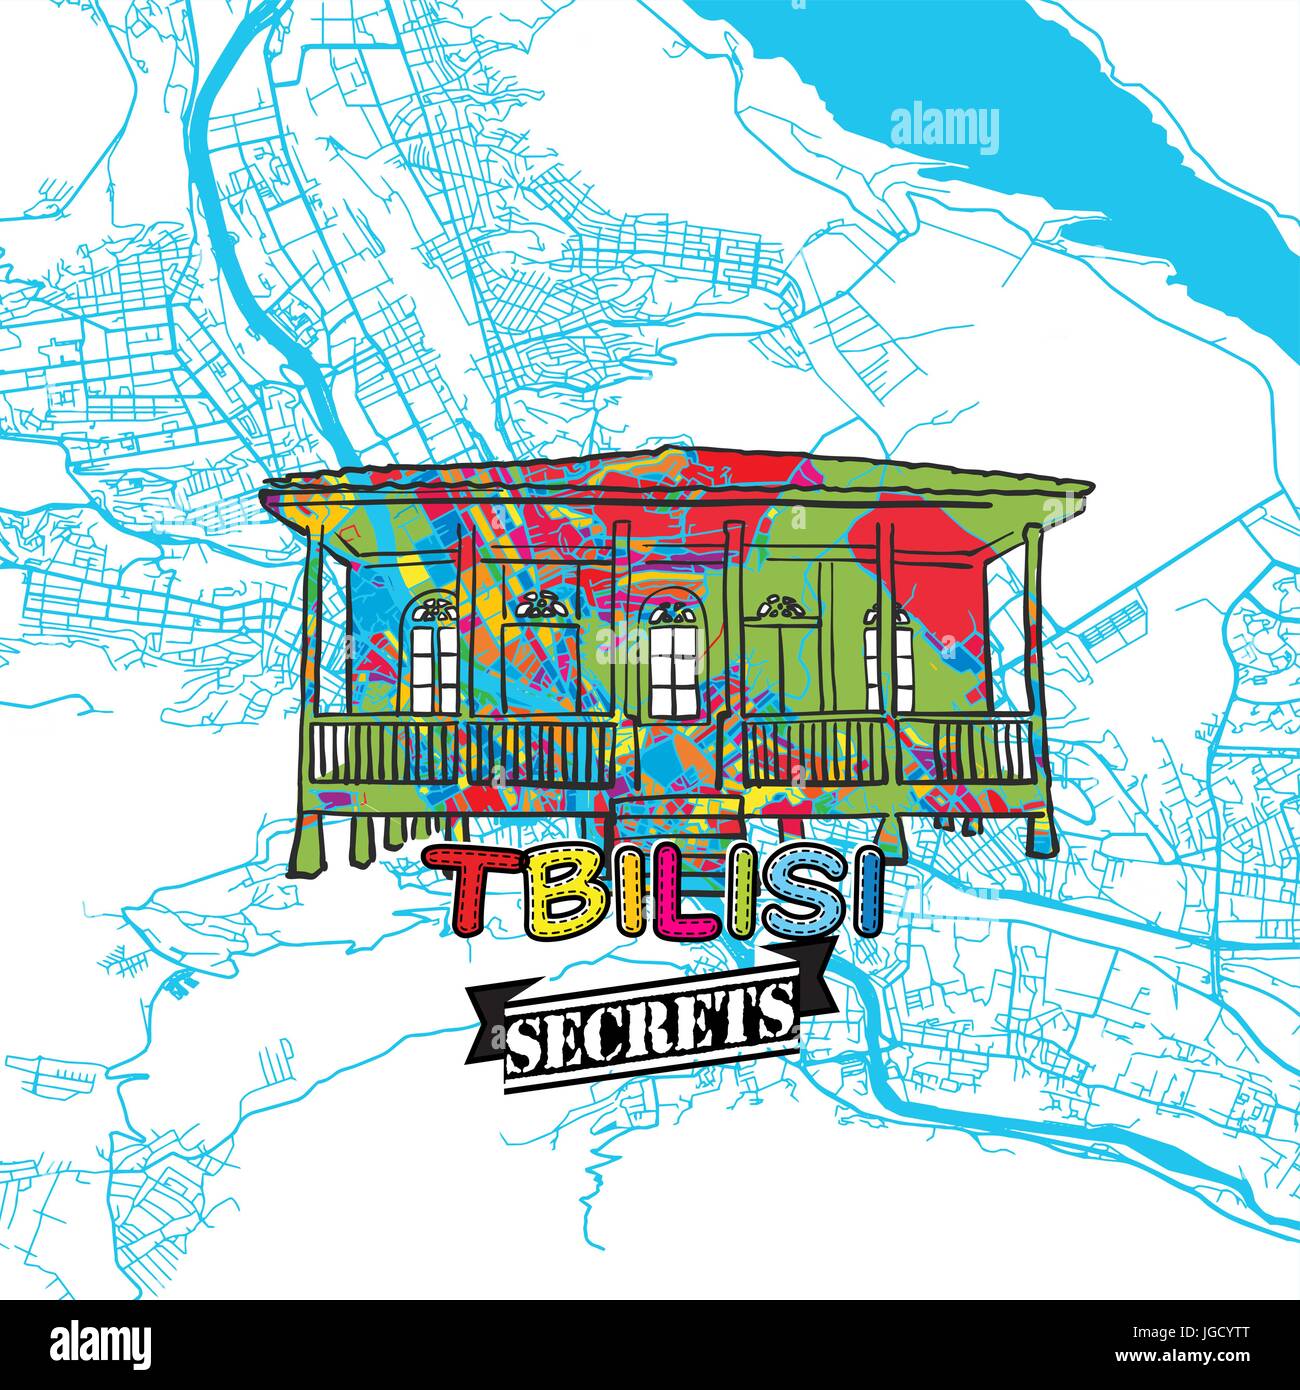 Tiflis (Tbilissi) Reise Geheimnisse Art Map für die Zuordnung von Experten und Reiseführer. Handgemachte Stadt Logo, Typo-Abzeichen und Hand gezeichnete Vektor-Bild an der Spitze sind gruppiert eine Stock Vektor